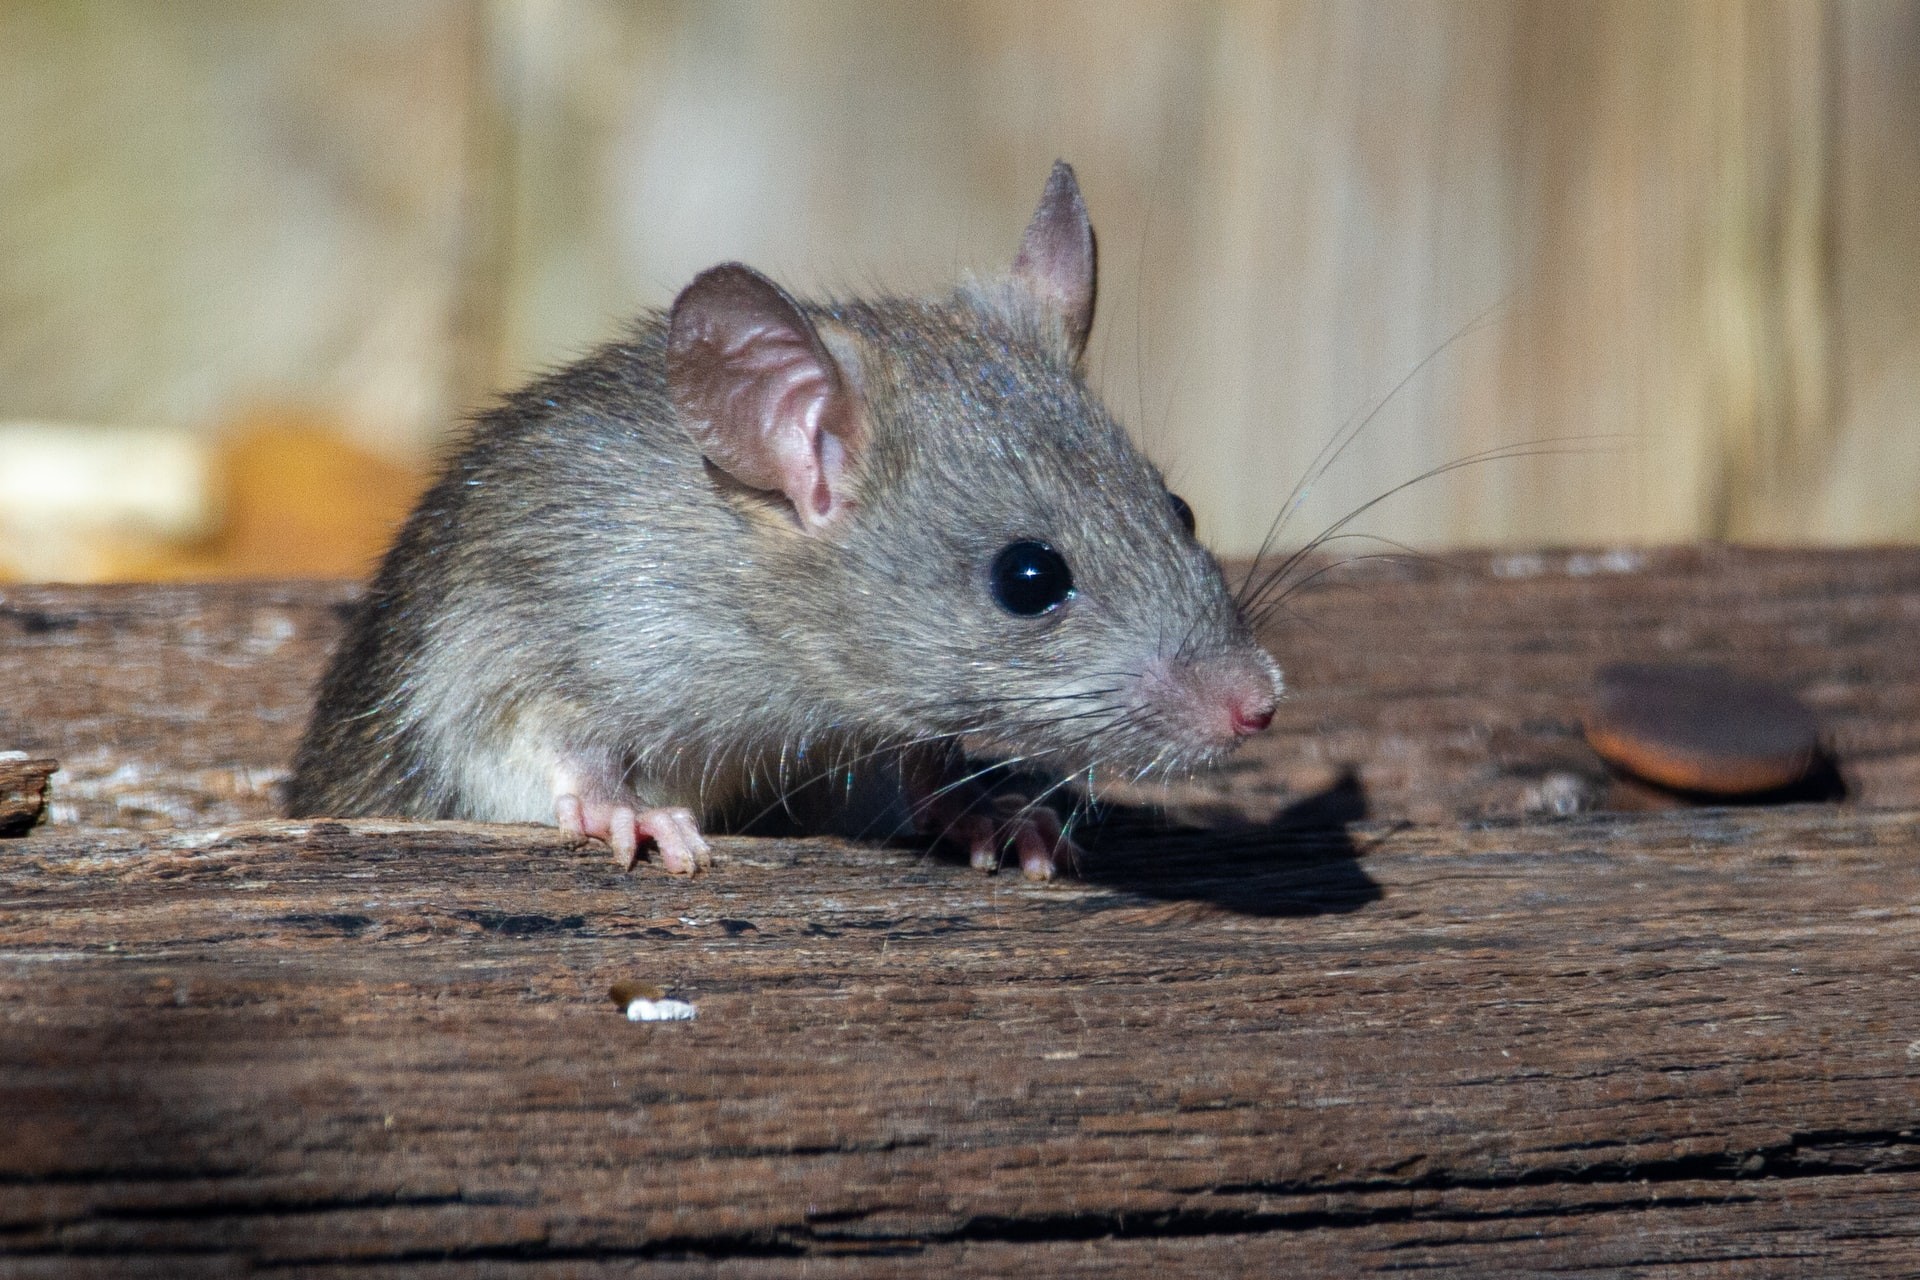 Tumores hepáticos foram eliminados em ratos com uma tecnologia de som  (Foto: Joshua J. Cotten/Unsplash )